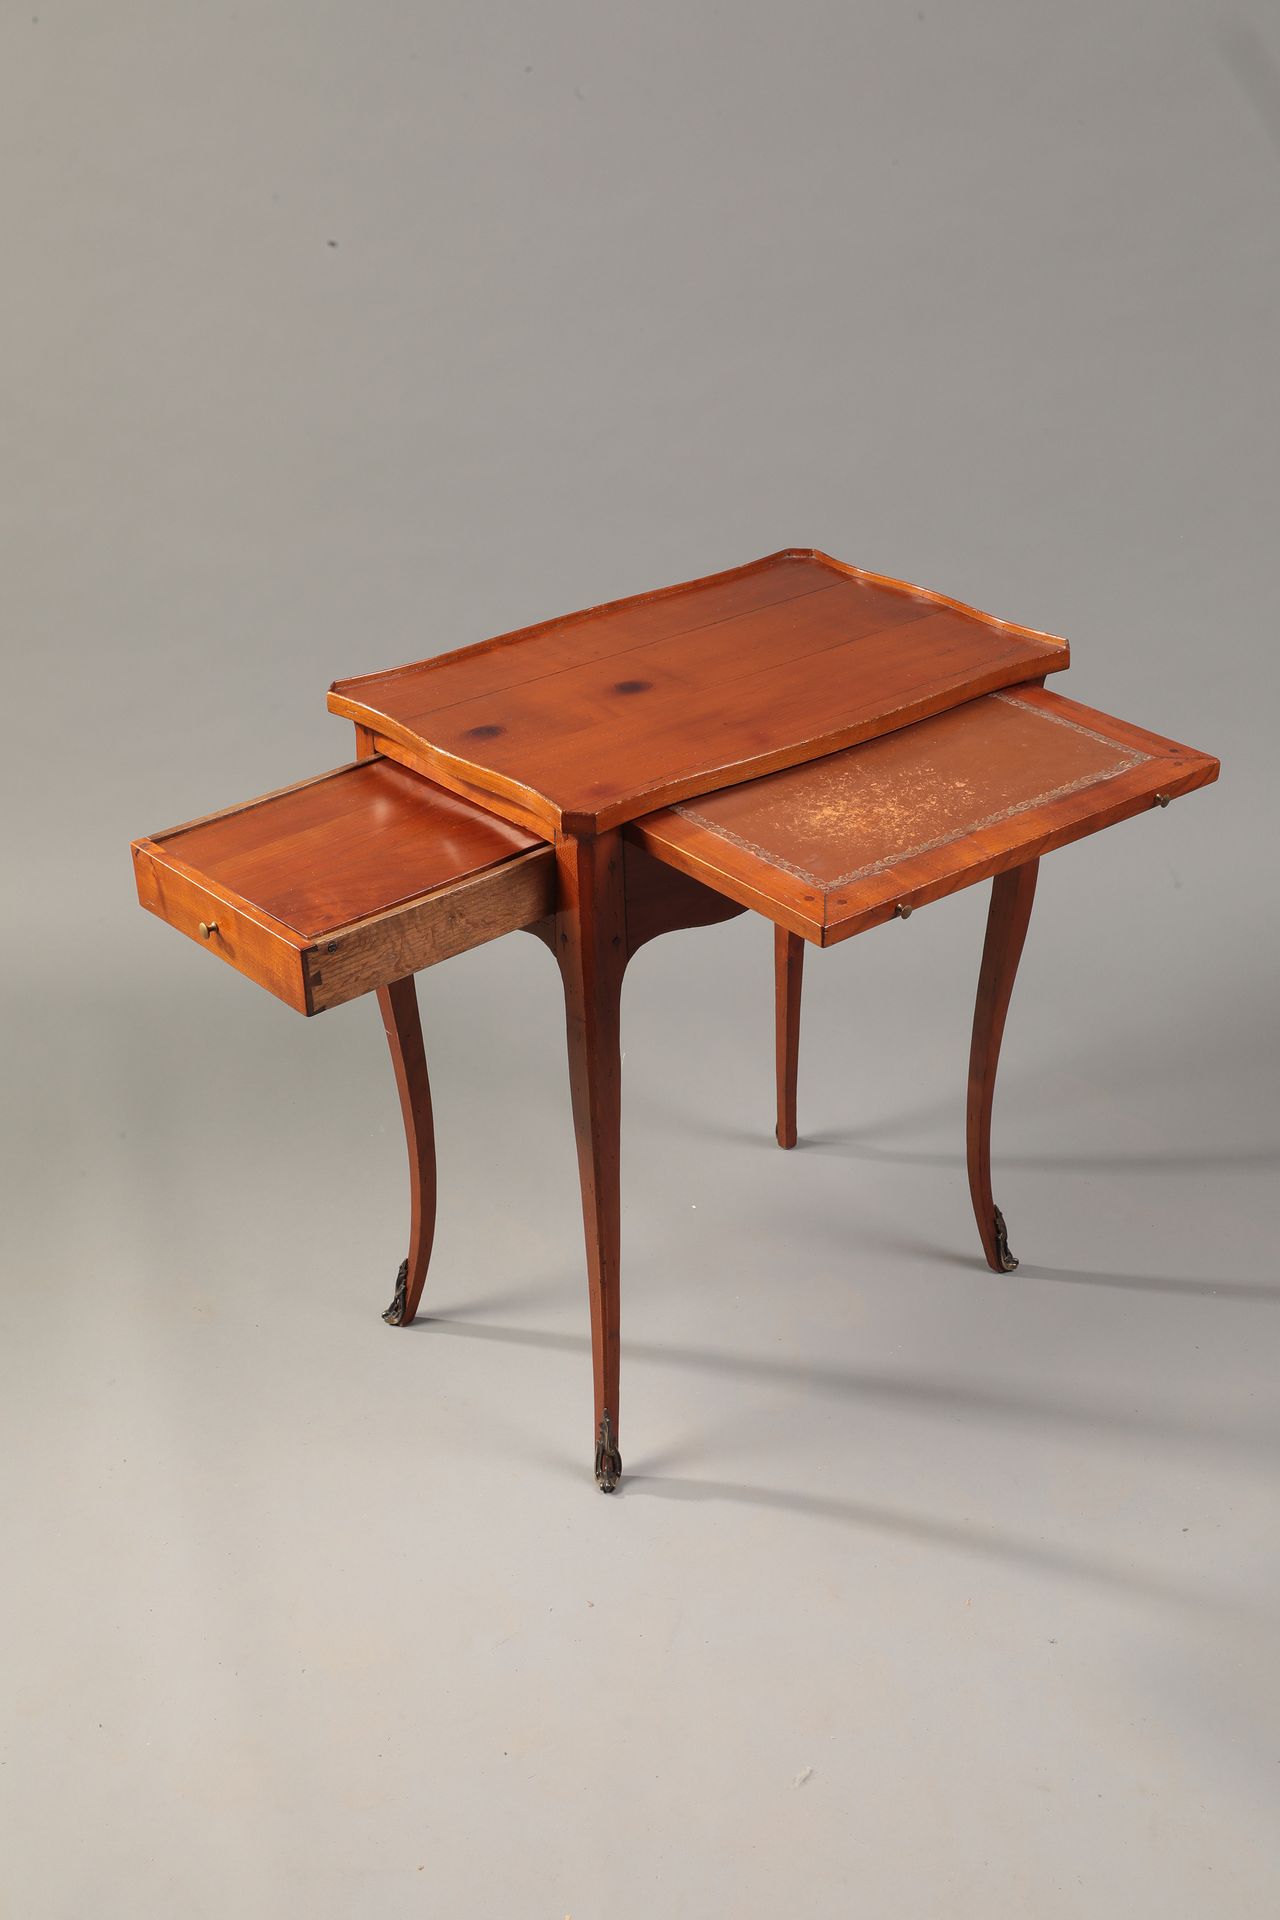 Null 浅色木质写字桌，棕色皮革桌面

并在侧面有一个抽屉的情况下打开，露出一个挡板。

凸形腿，带青铜套筒

19世纪

H.68厘米，宽58厘米，长38厘&hellip;